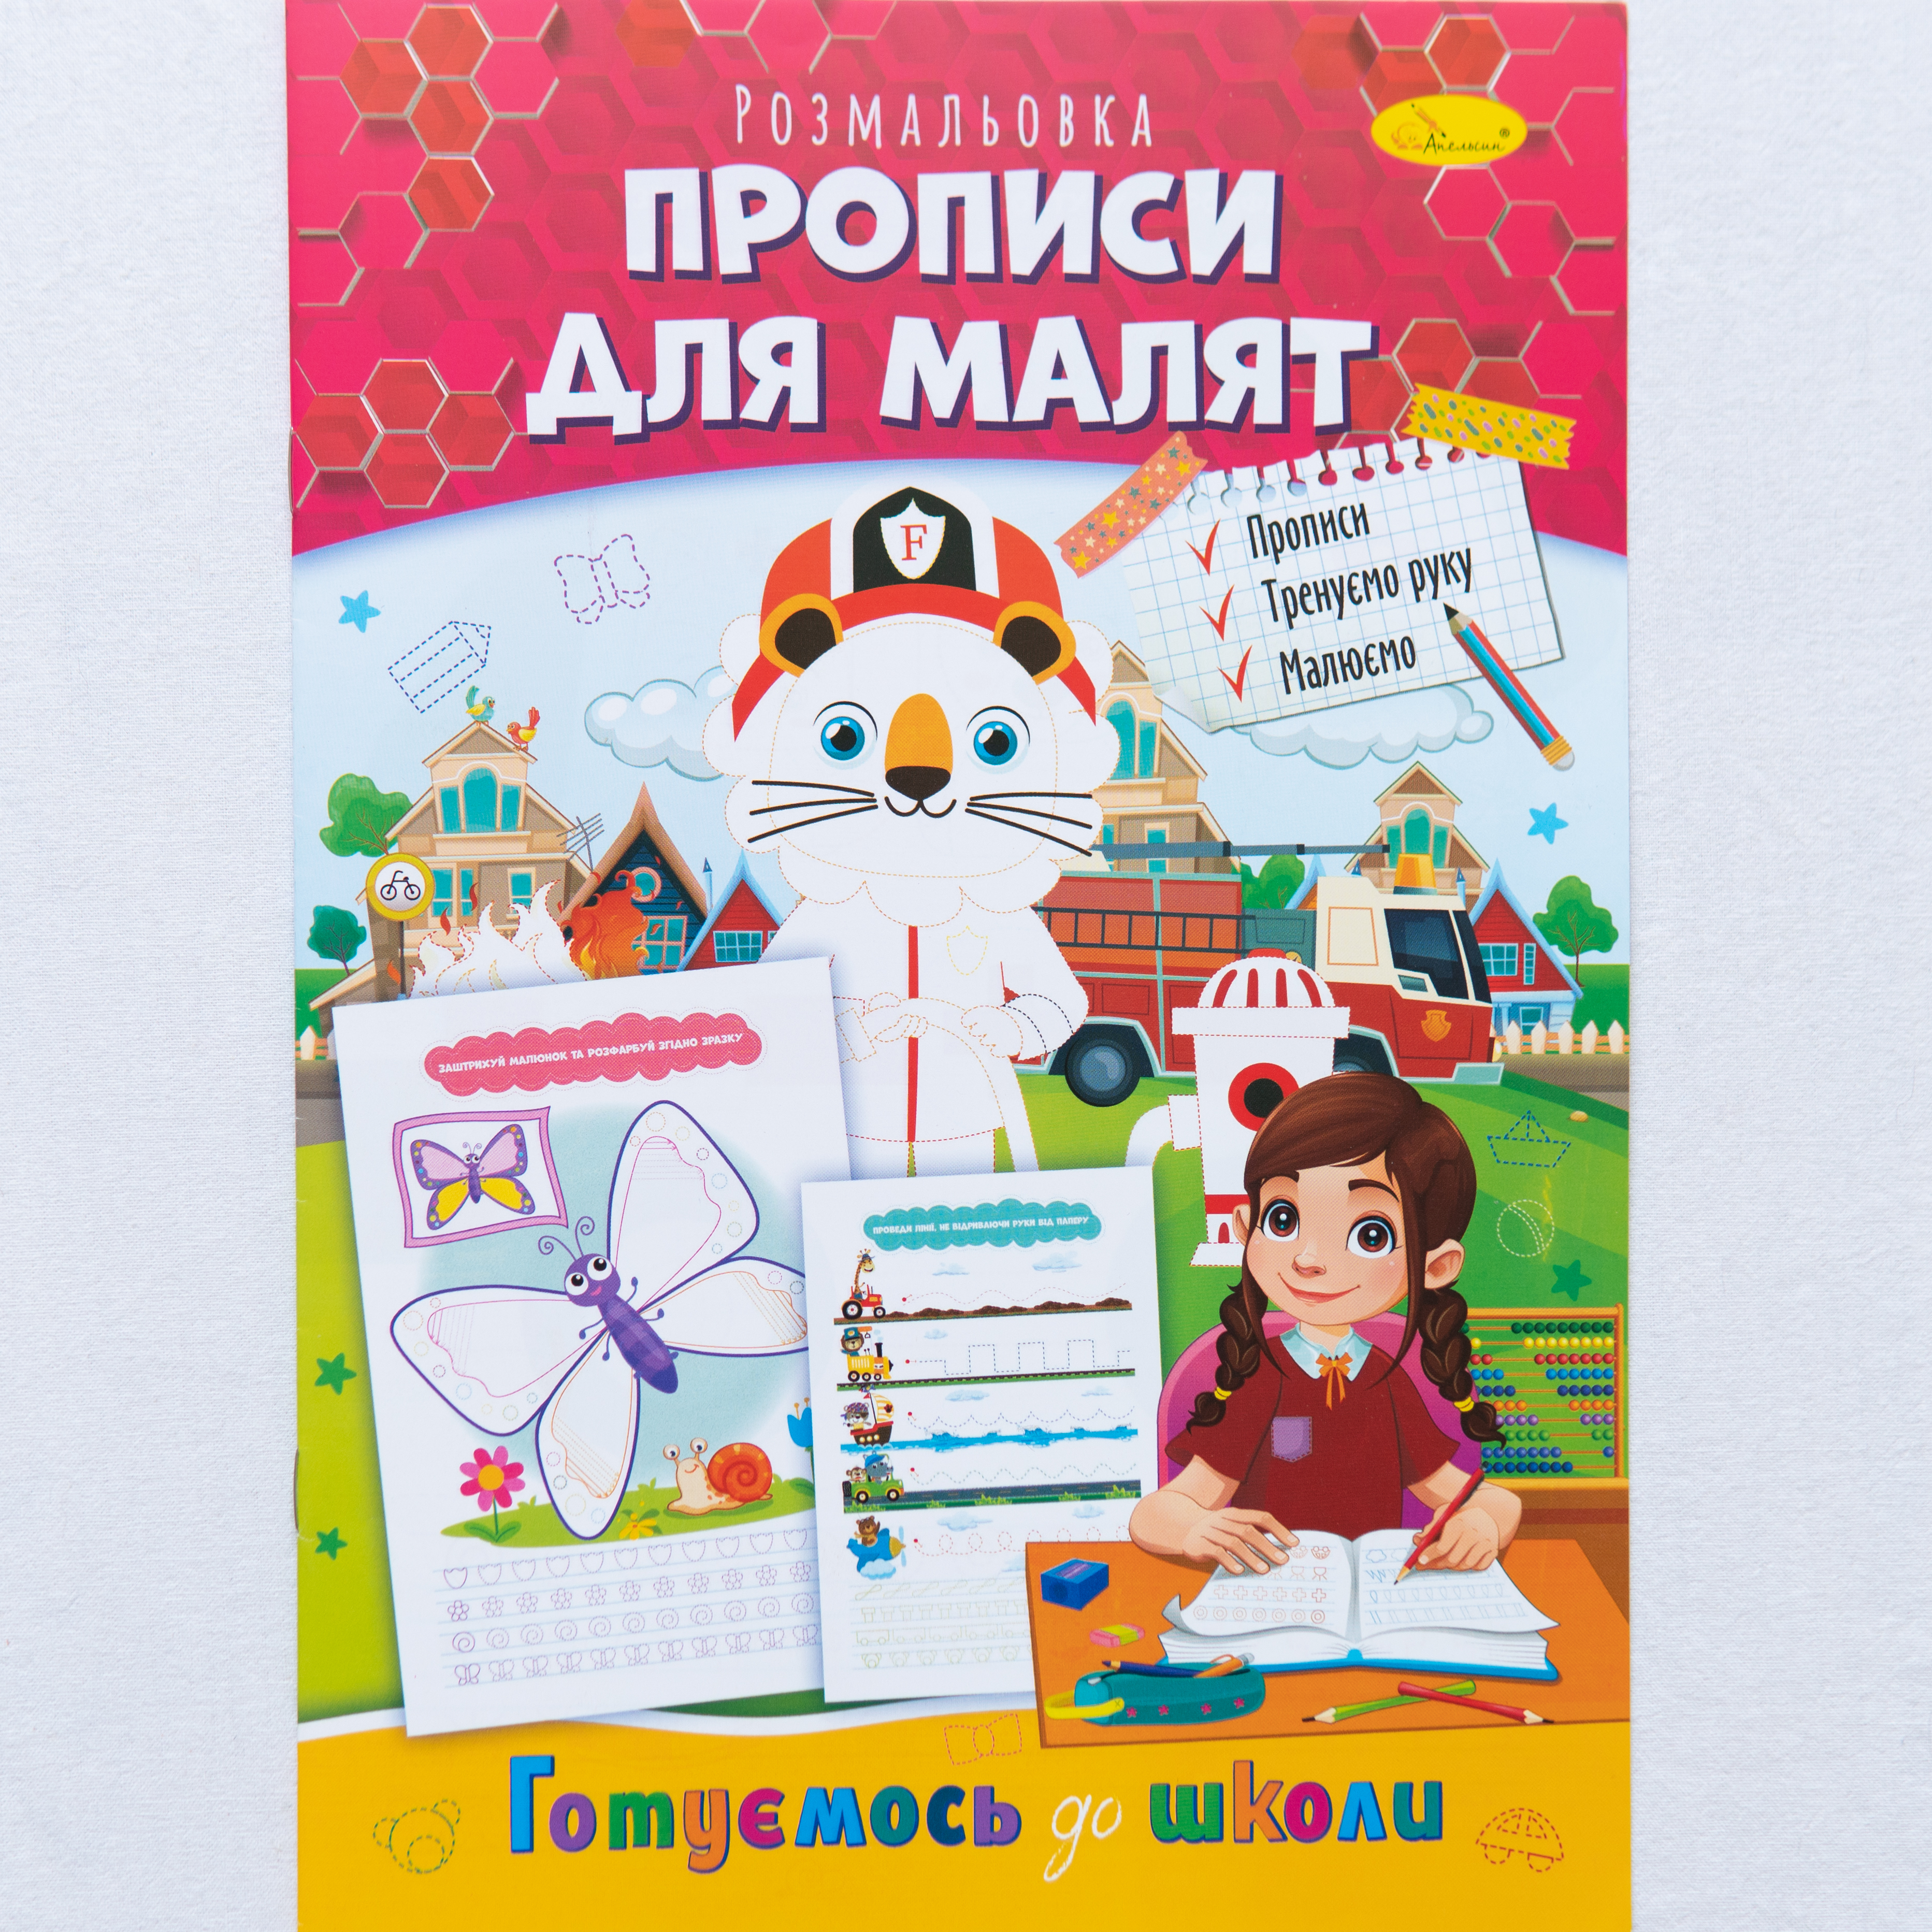 Schreibübungen für Kleinkinder - Vorbereitung auf die Schule/Schreibübungen für Kleinkinder - Vorbereitung auf die Schule